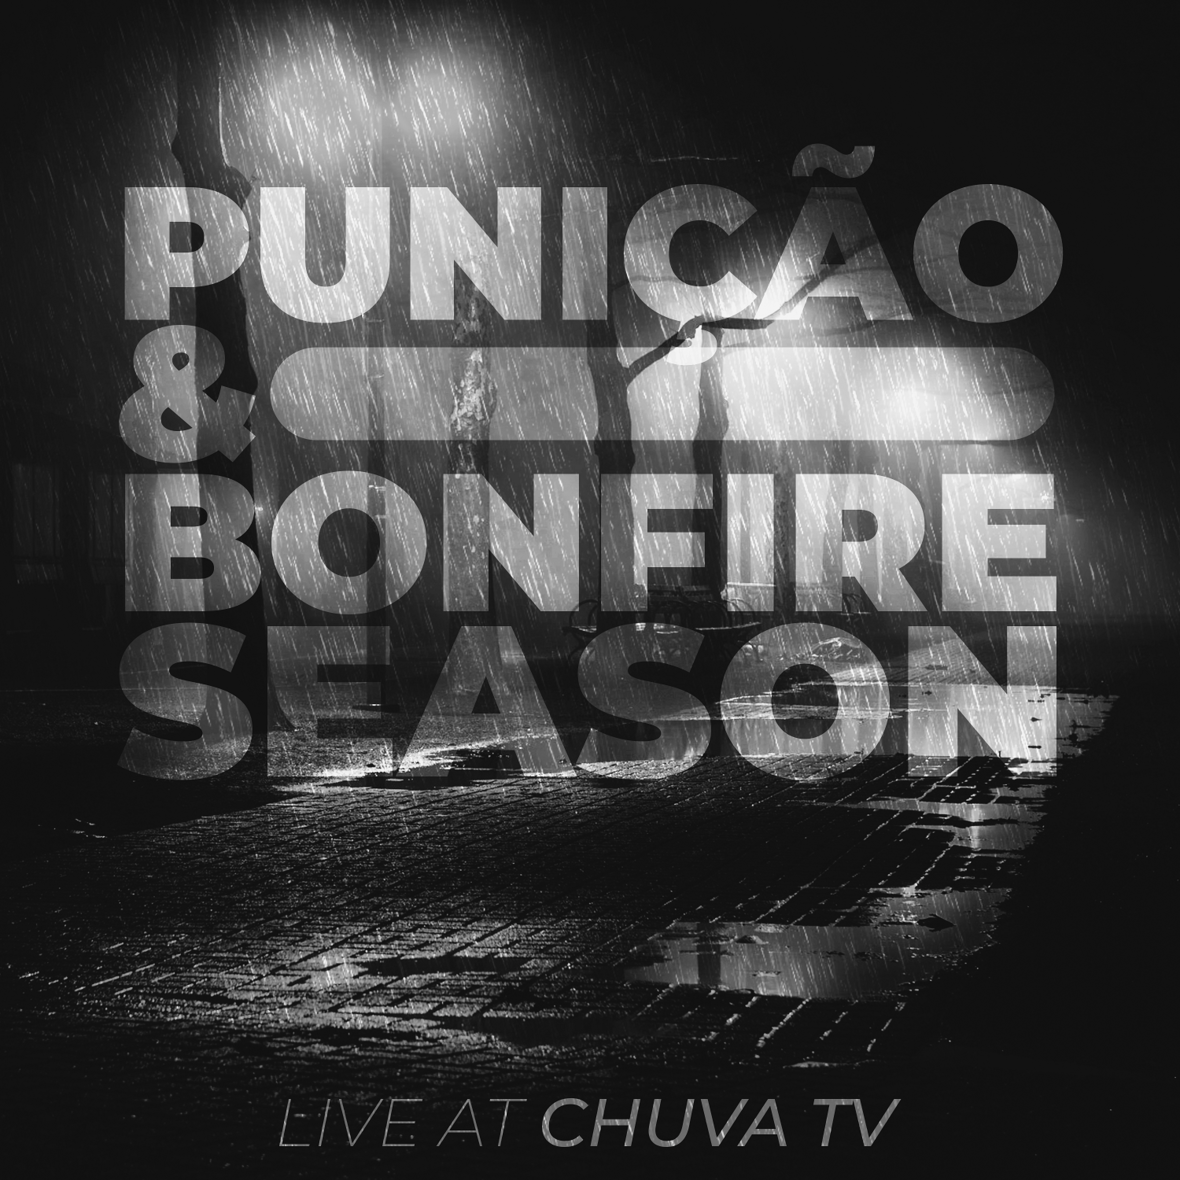 Punicao e Bonfire at Chuva 1.0 capa 3000x300px